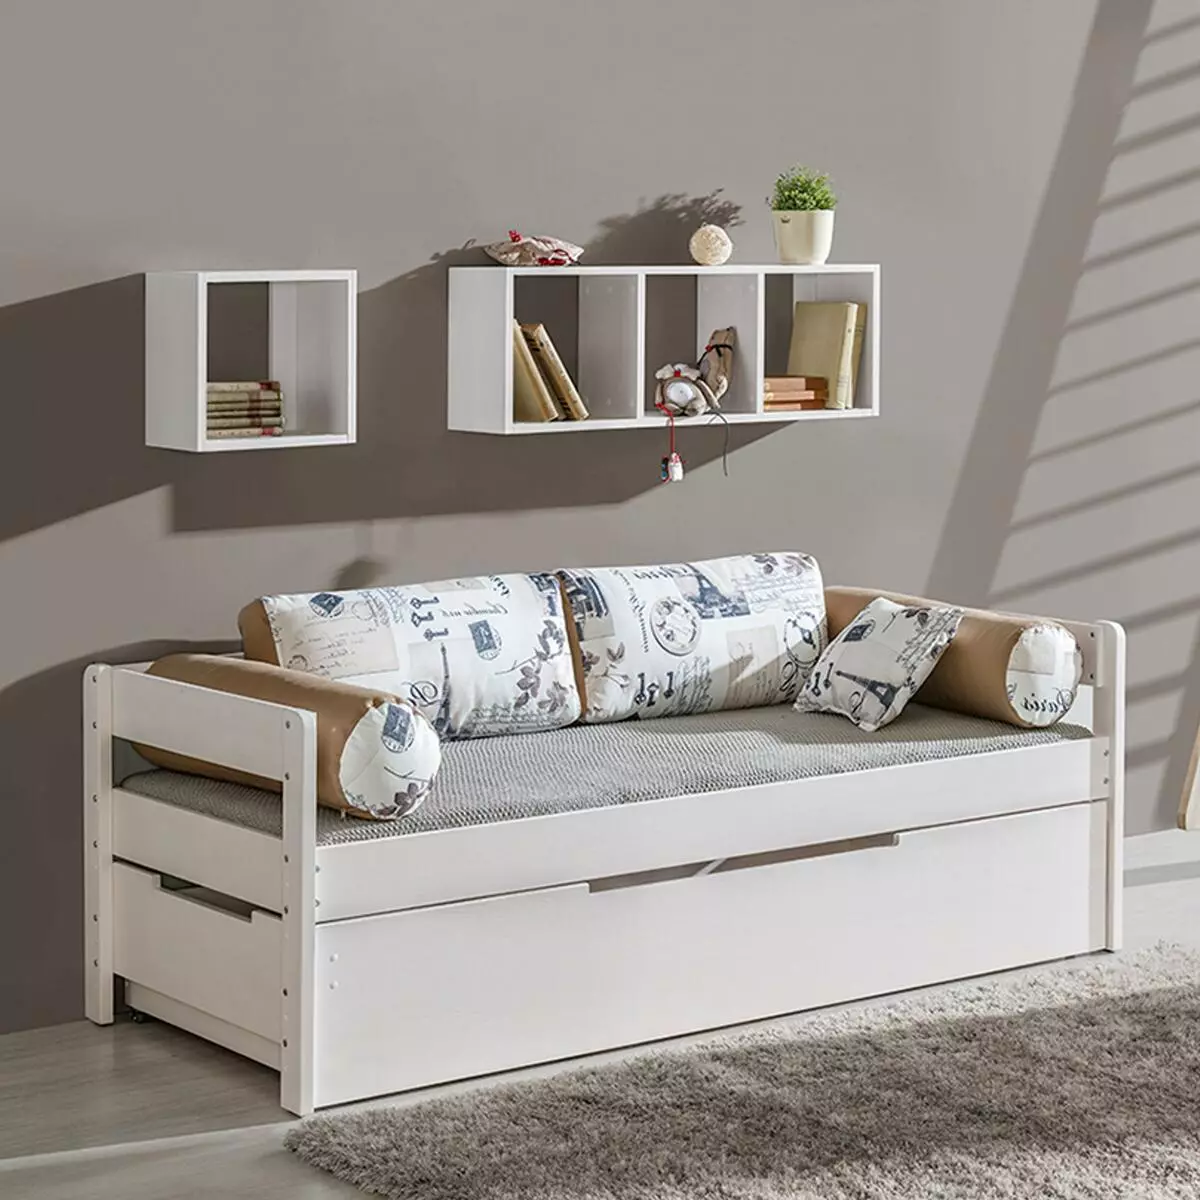 沙发床适用于青少年（57张照片）：型号的变压器，带有矫形或标准床垫，带抽屉等床铺 20920_7